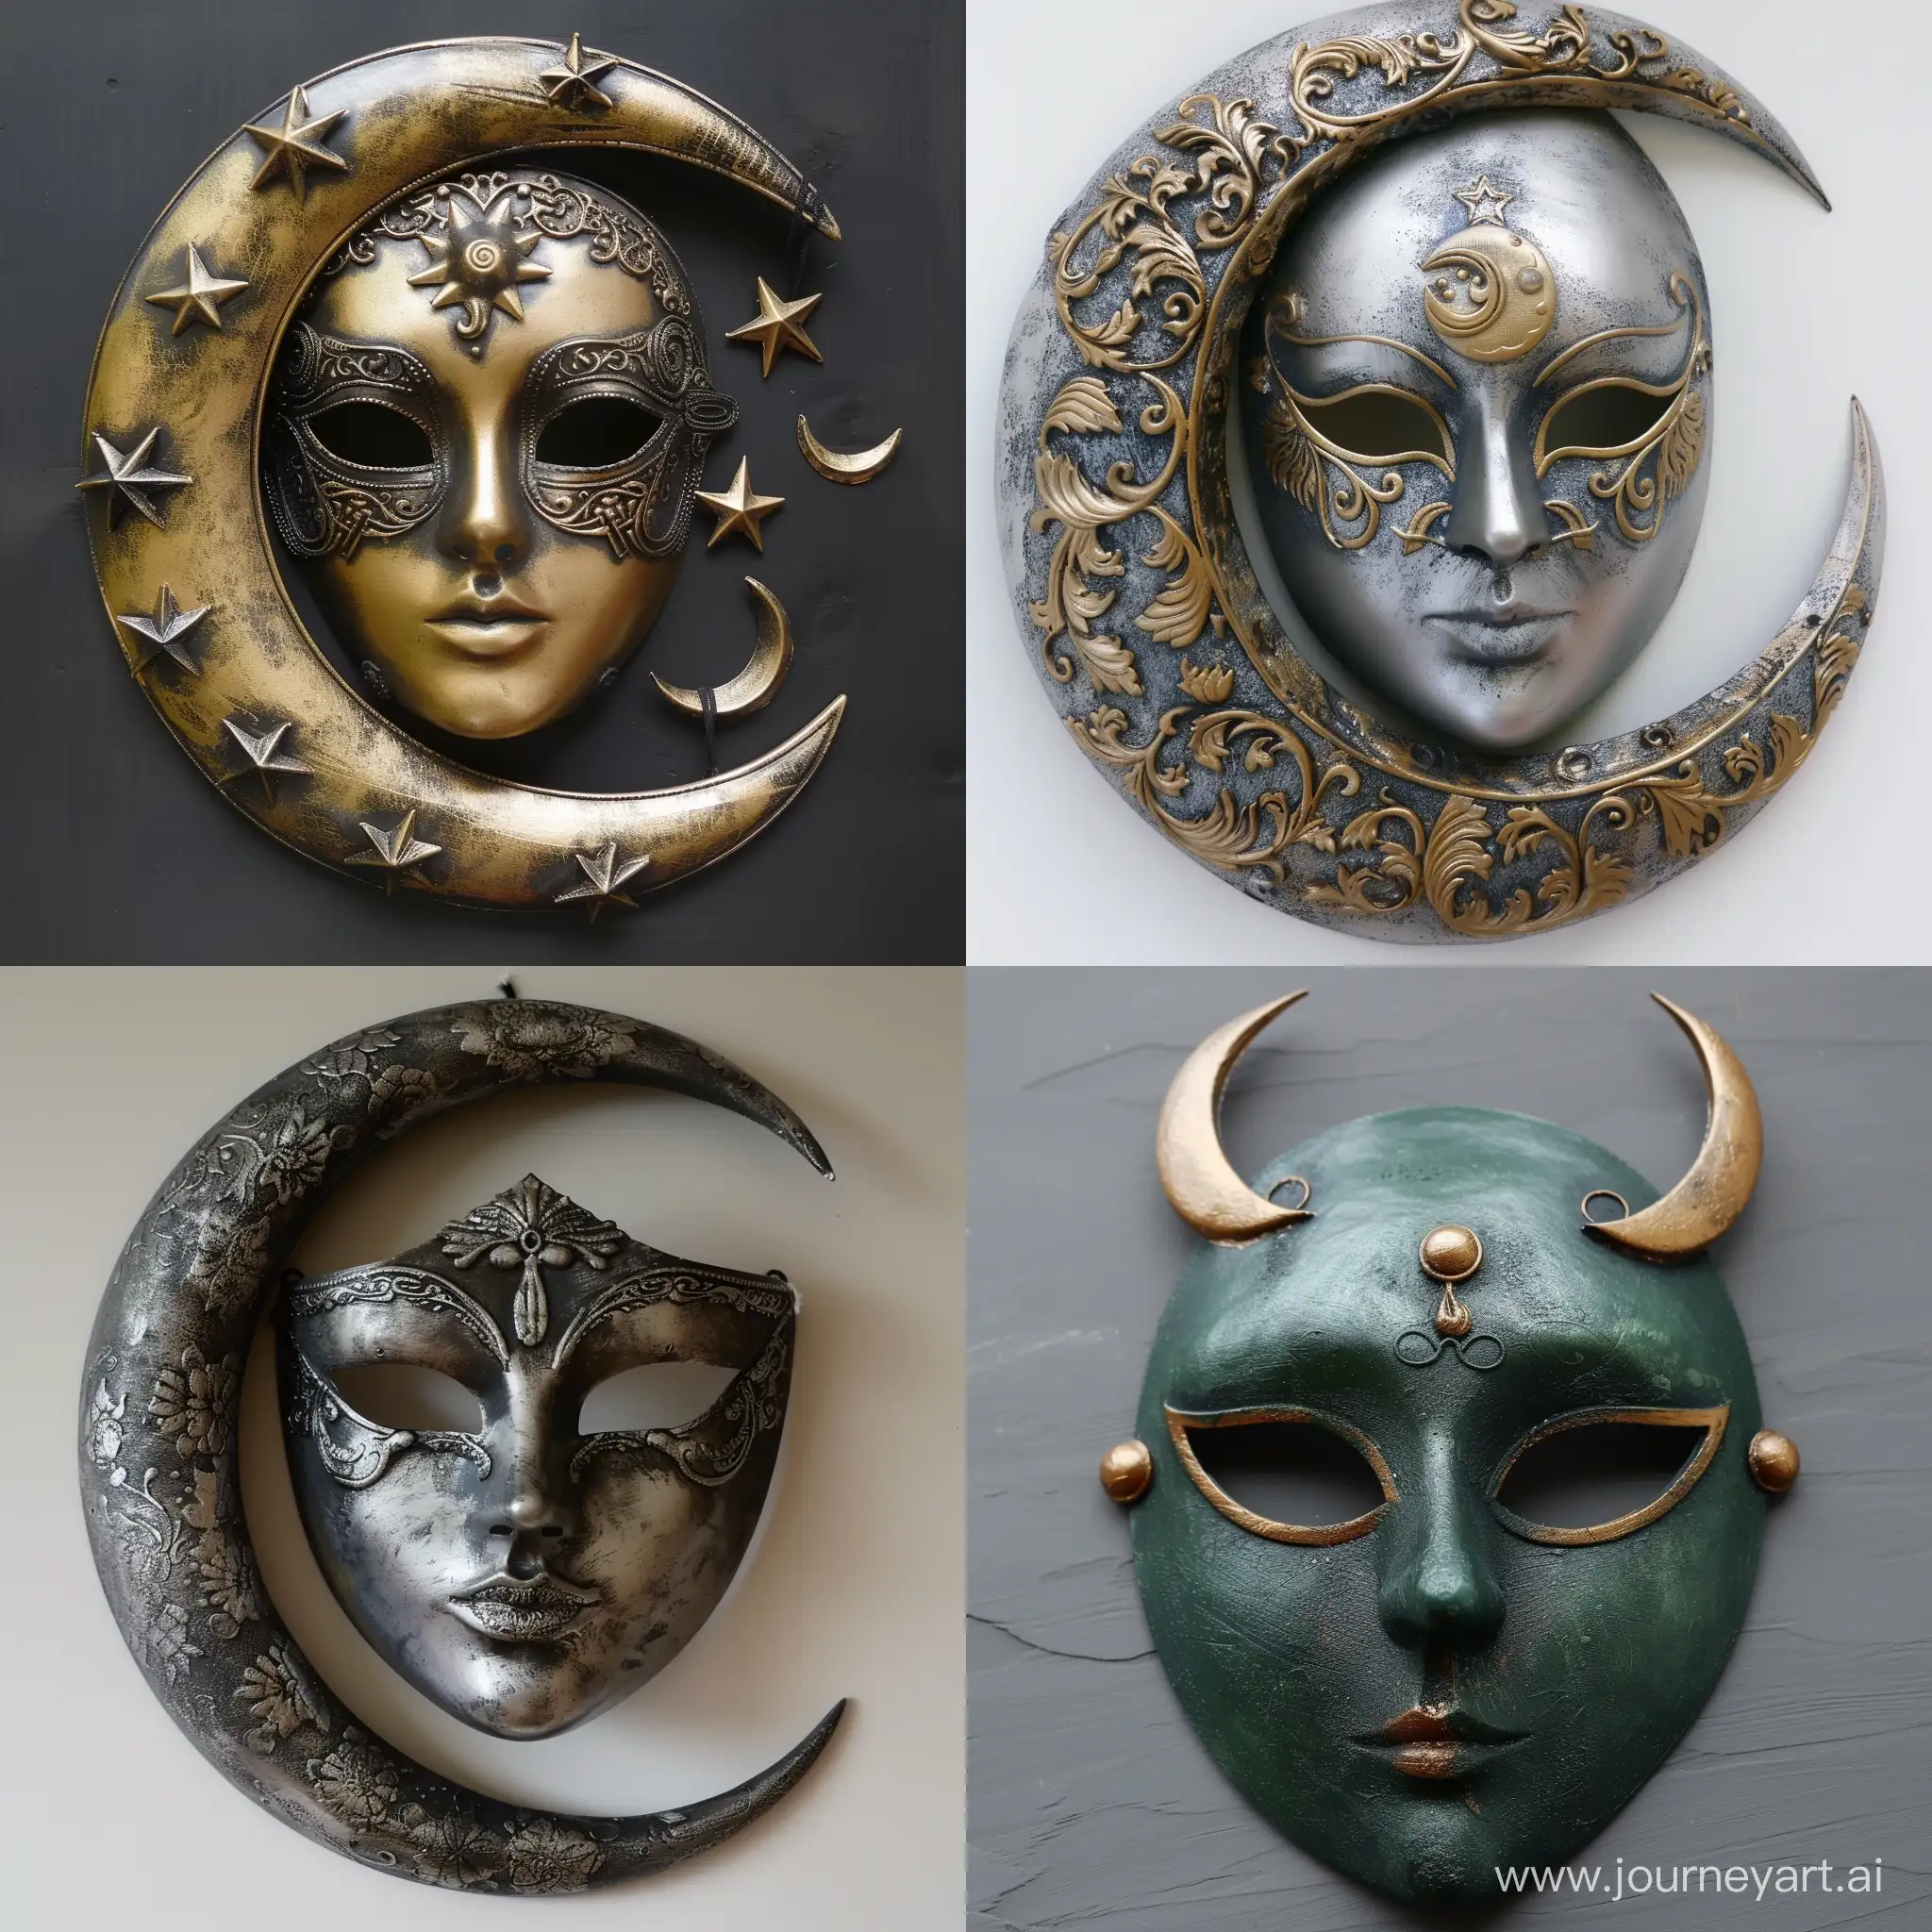 Turkic-Moon-Goddess-Mythology-Mask-Artwork